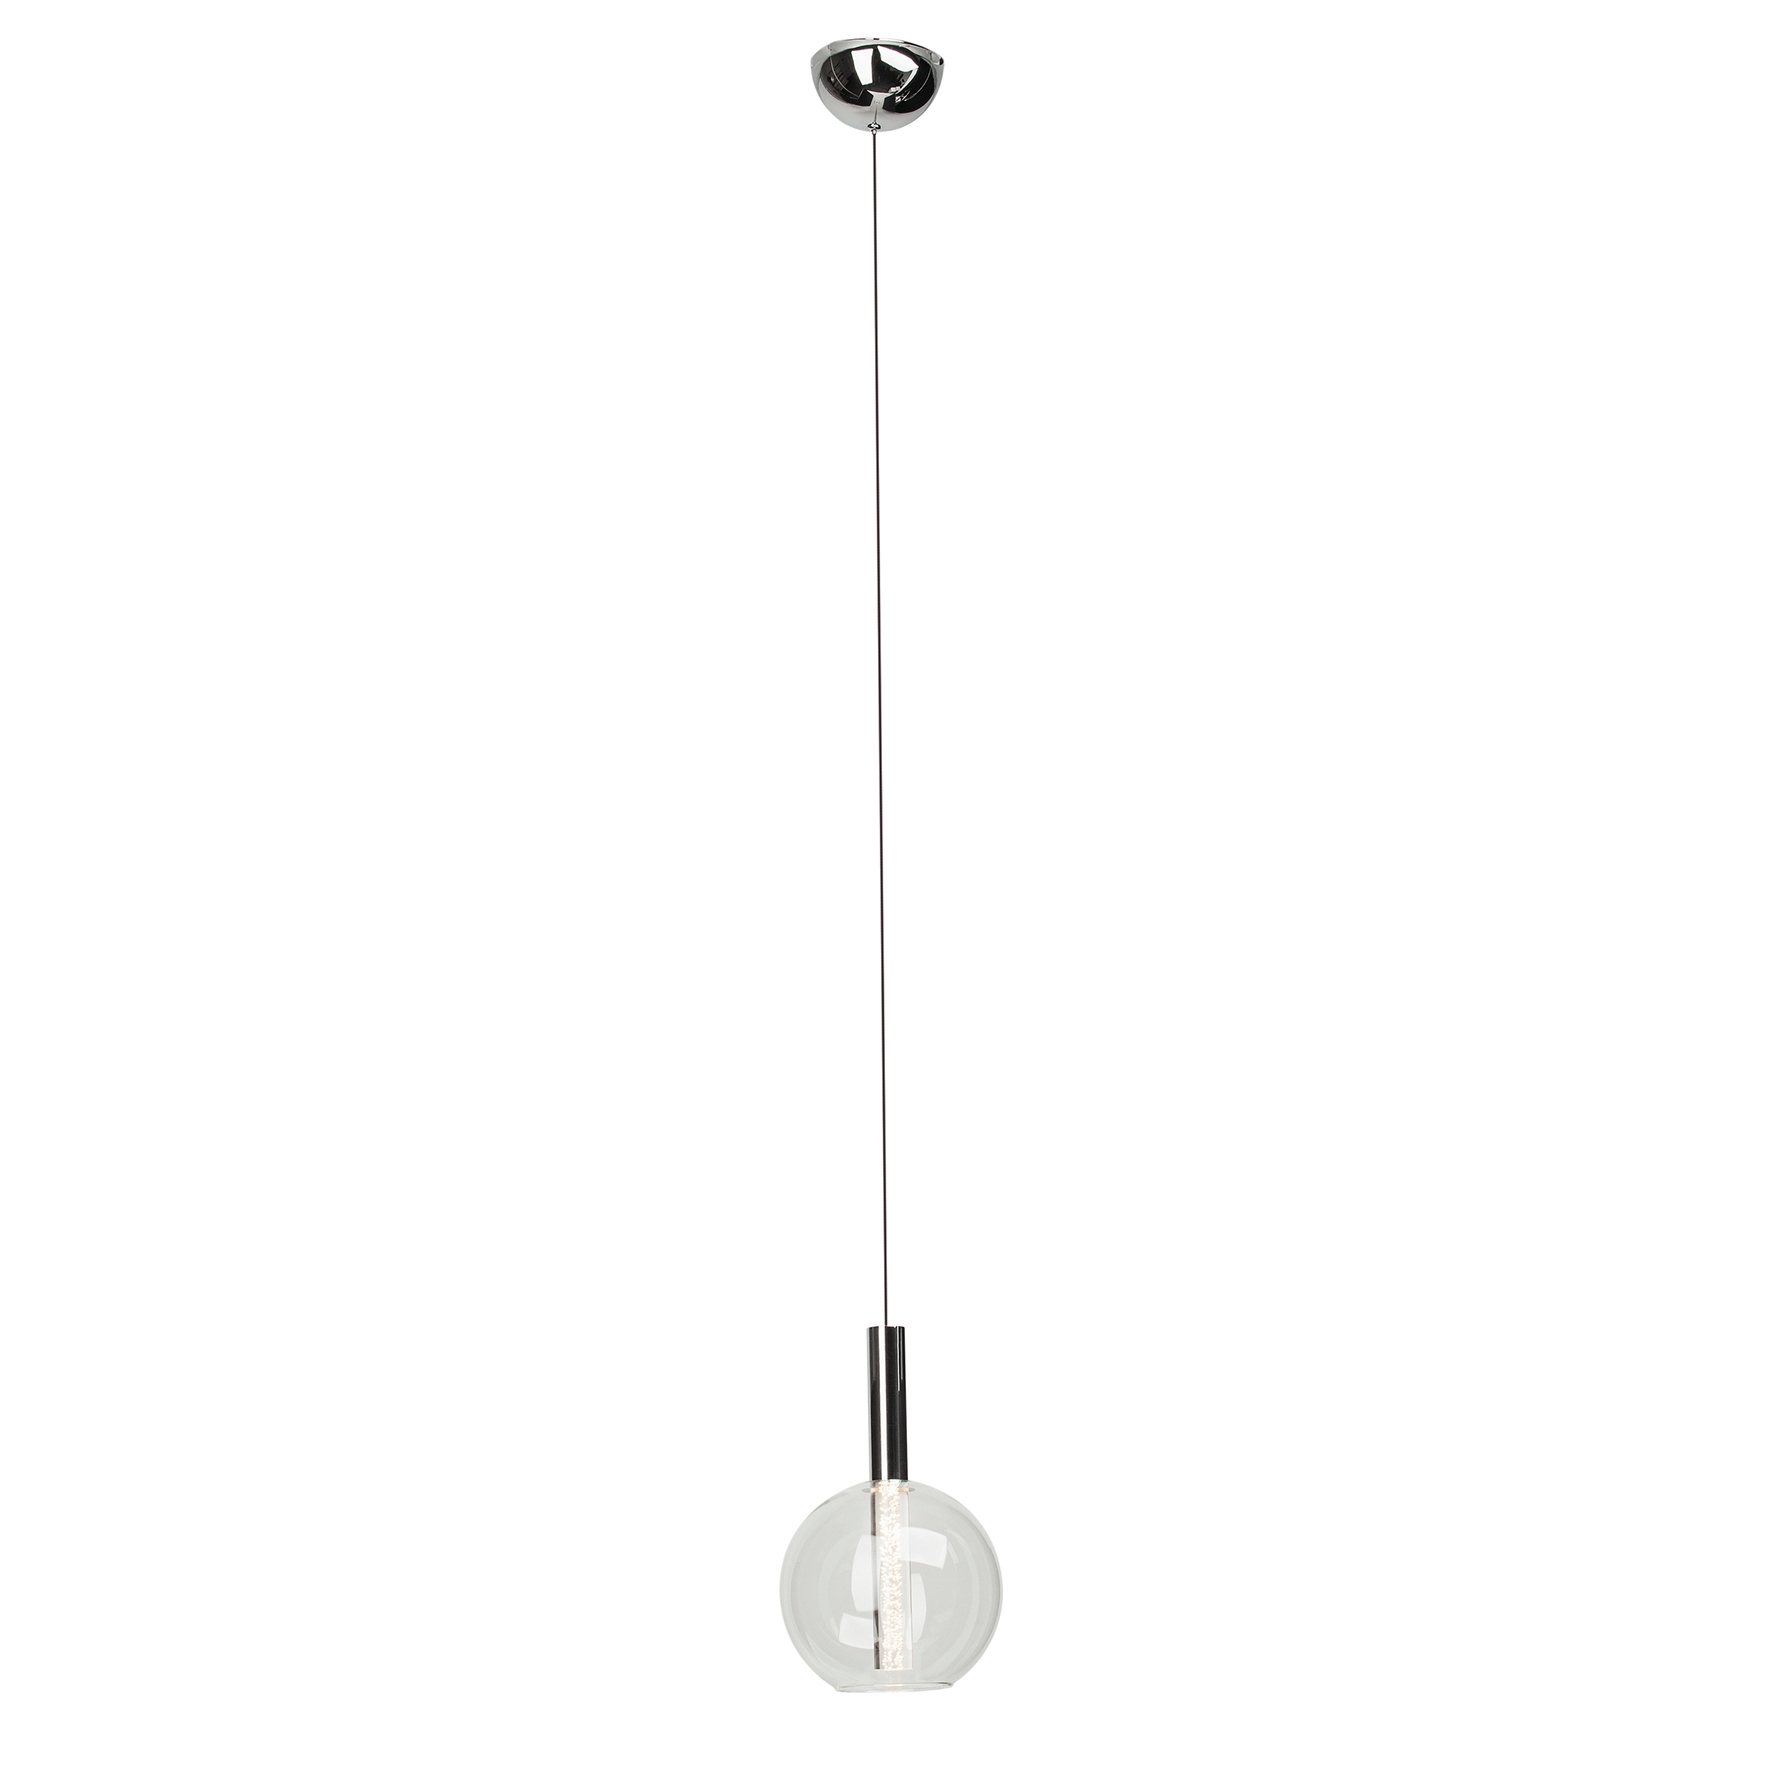 Lampadario Moderno Elegant cromo, in metallo, D. 18 cm, L. 152 cm, BRILLIANT - 1